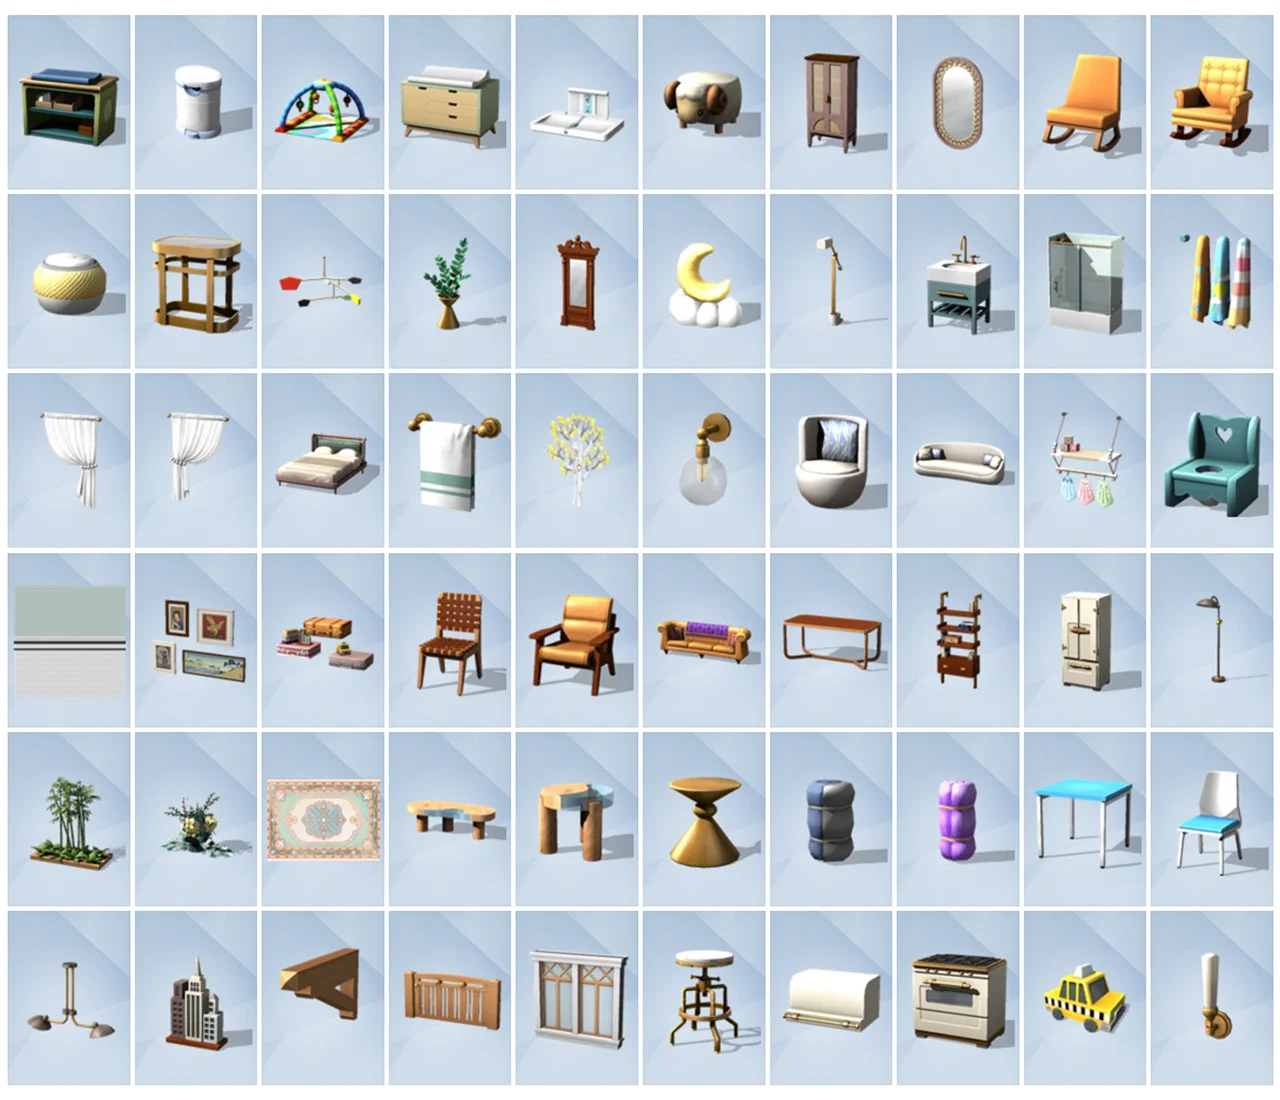 The Sims 4: 8 Dicas Simples e Úteis para Construção - SimsTime